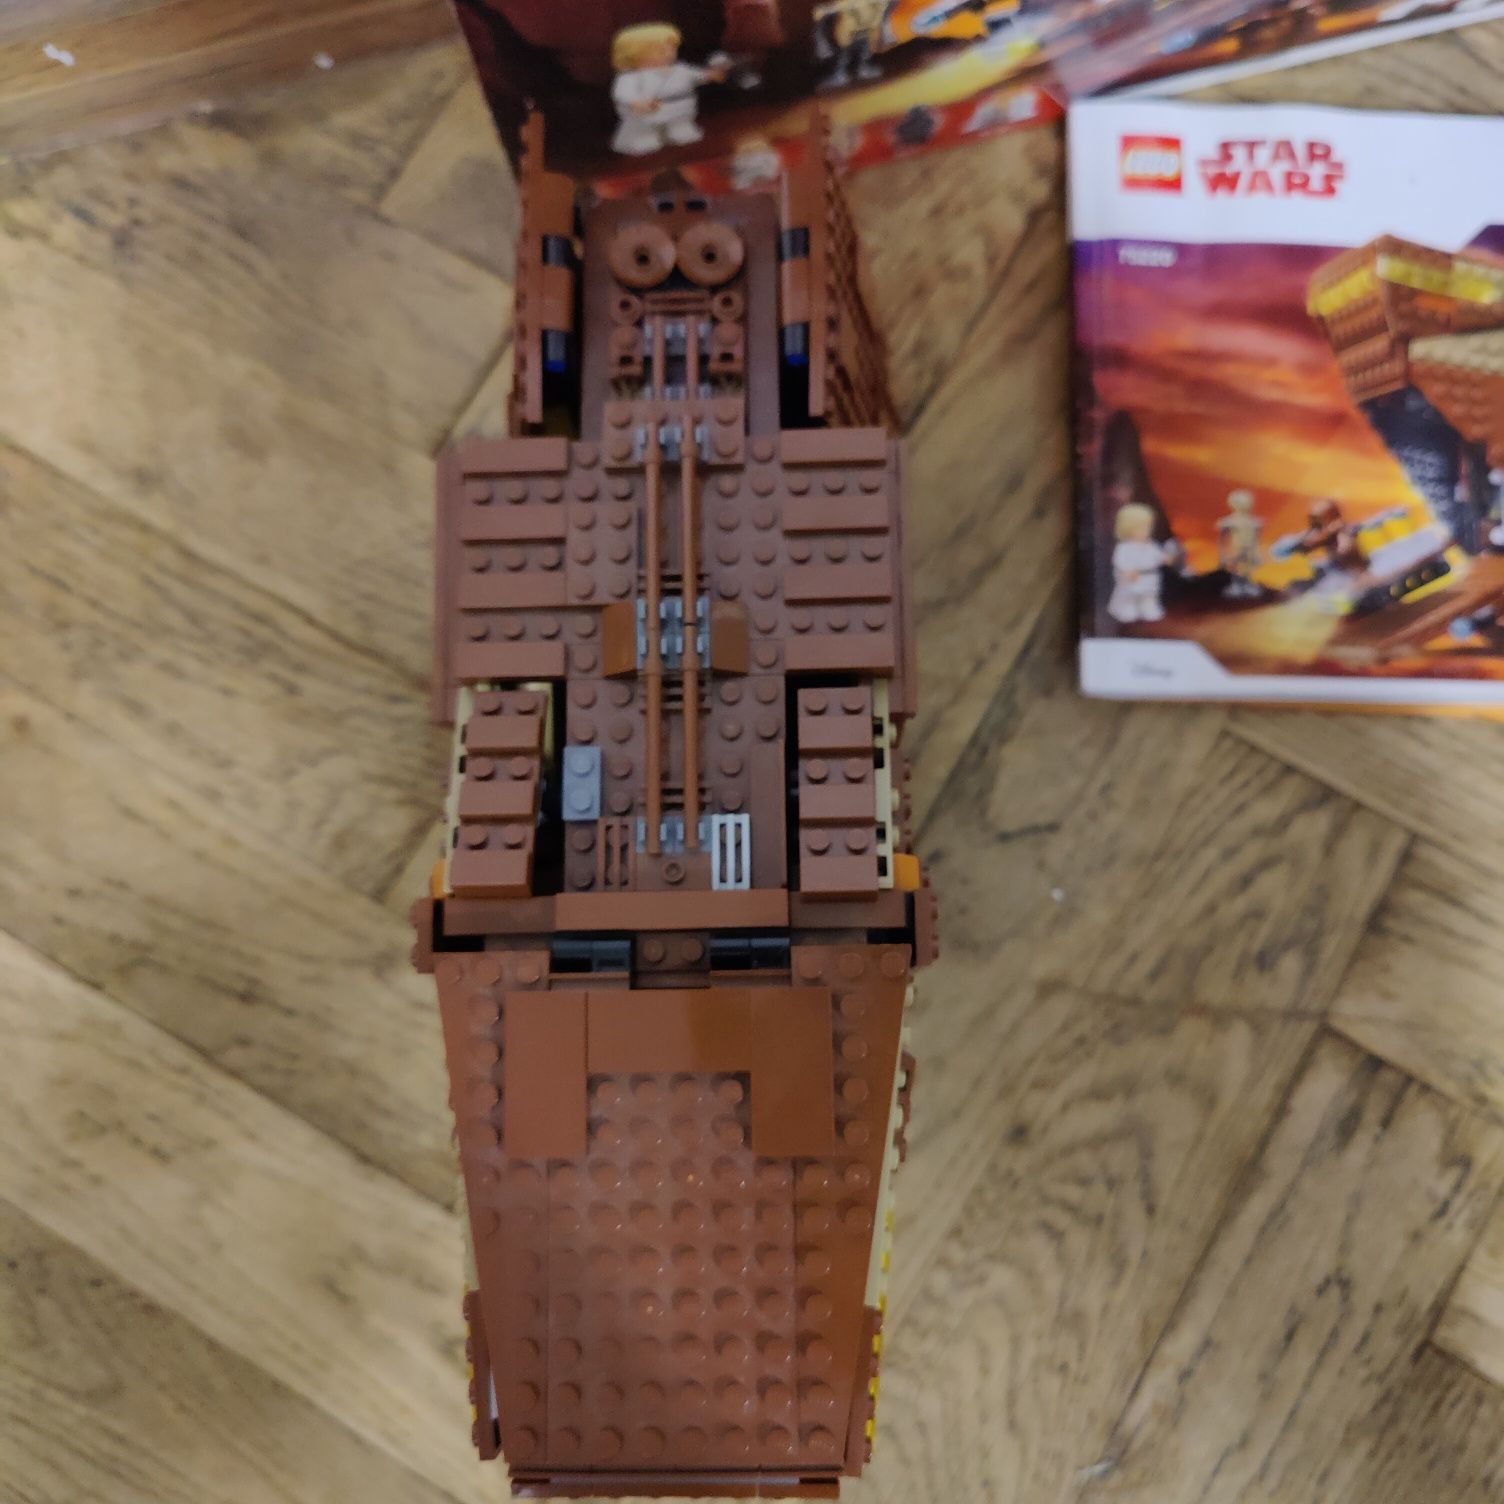 Lego 75220 star wars czołg jawów sandcrawler